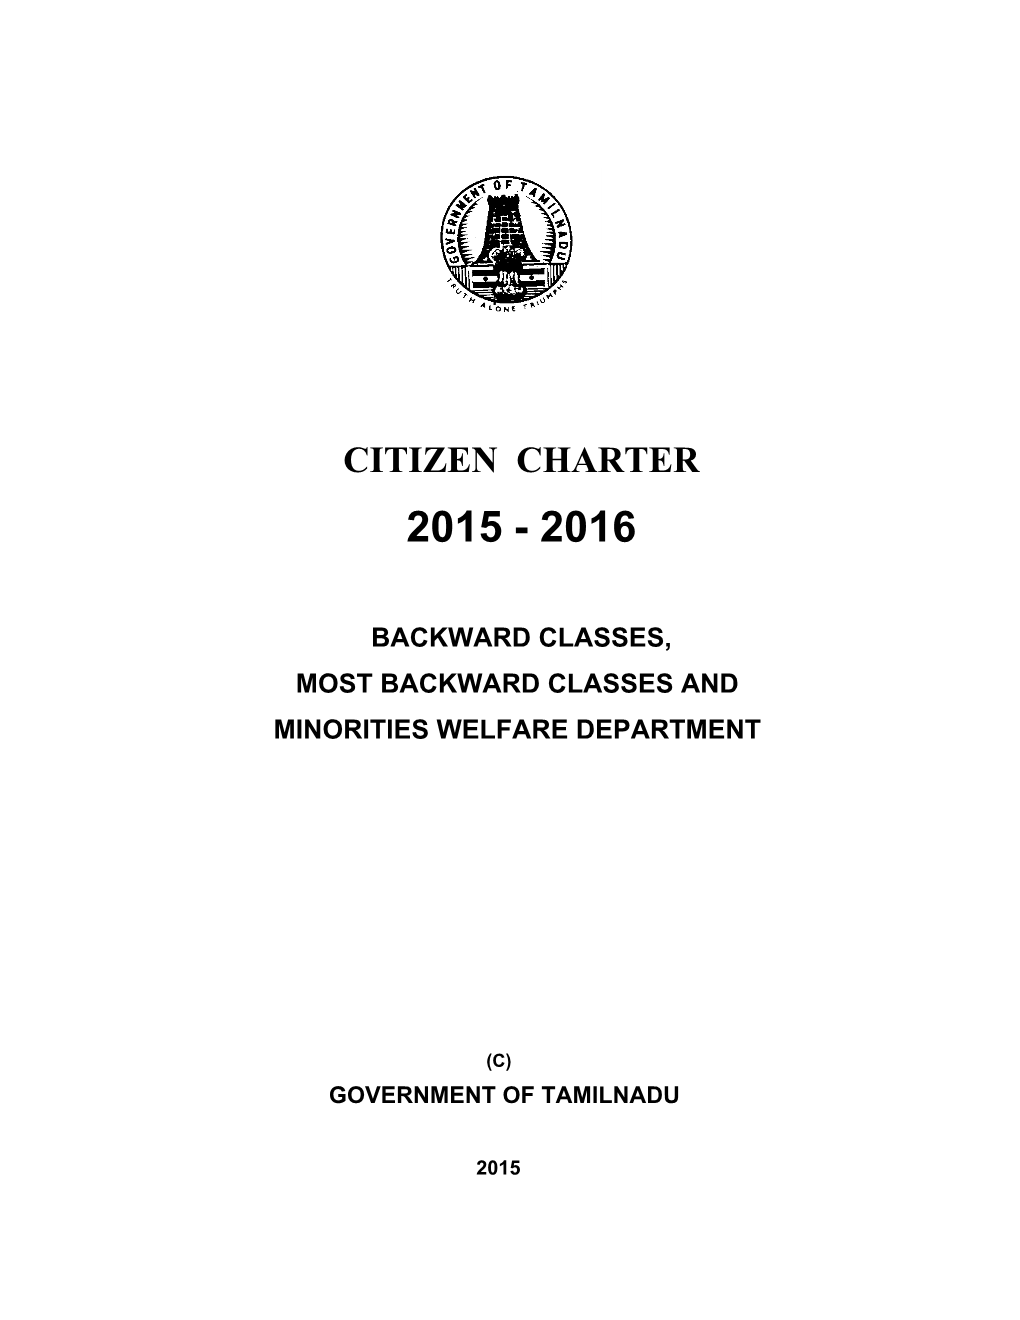 Citizen Charter 2015 - 2016